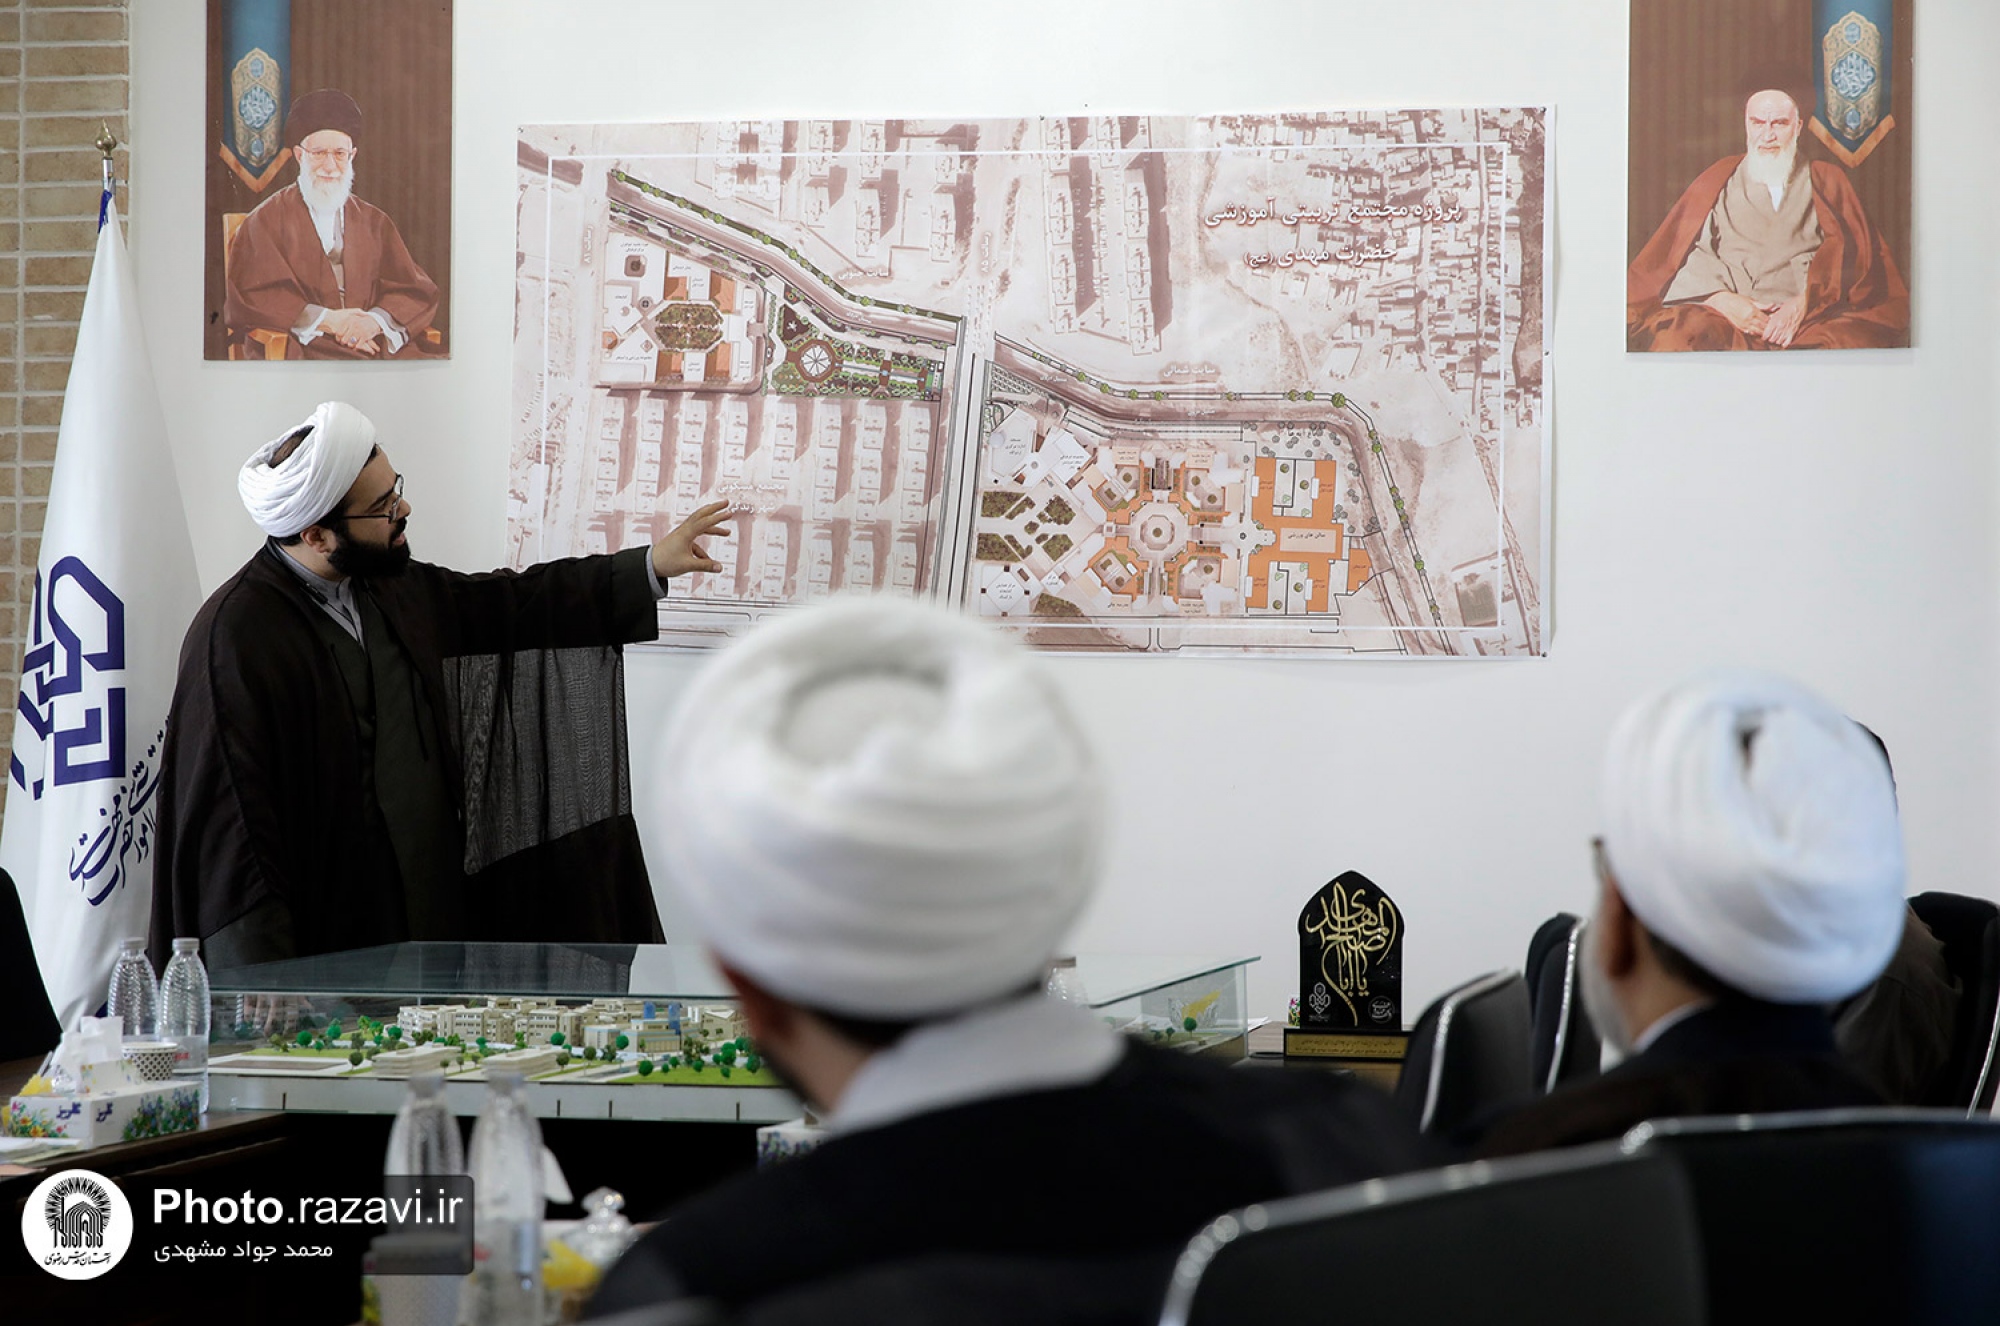 بازدید تولیت آستان قدس رضوی از پروژه مجتمع تربیتی آموزشی حضرت مهدی(عج)